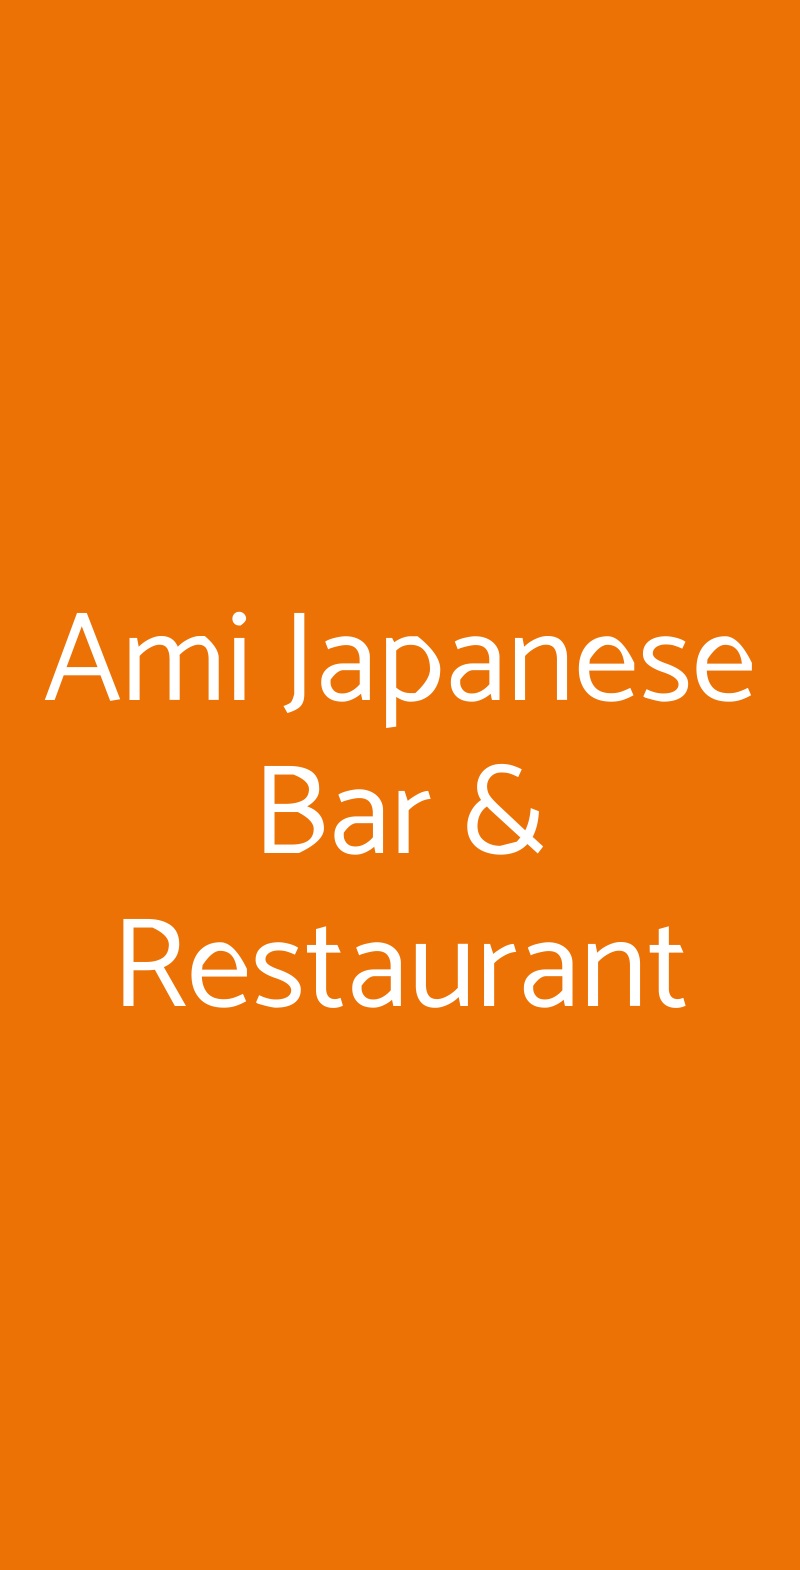 Ami Japanese Bar & Restaurant Torre del Greco menù 1 pagina